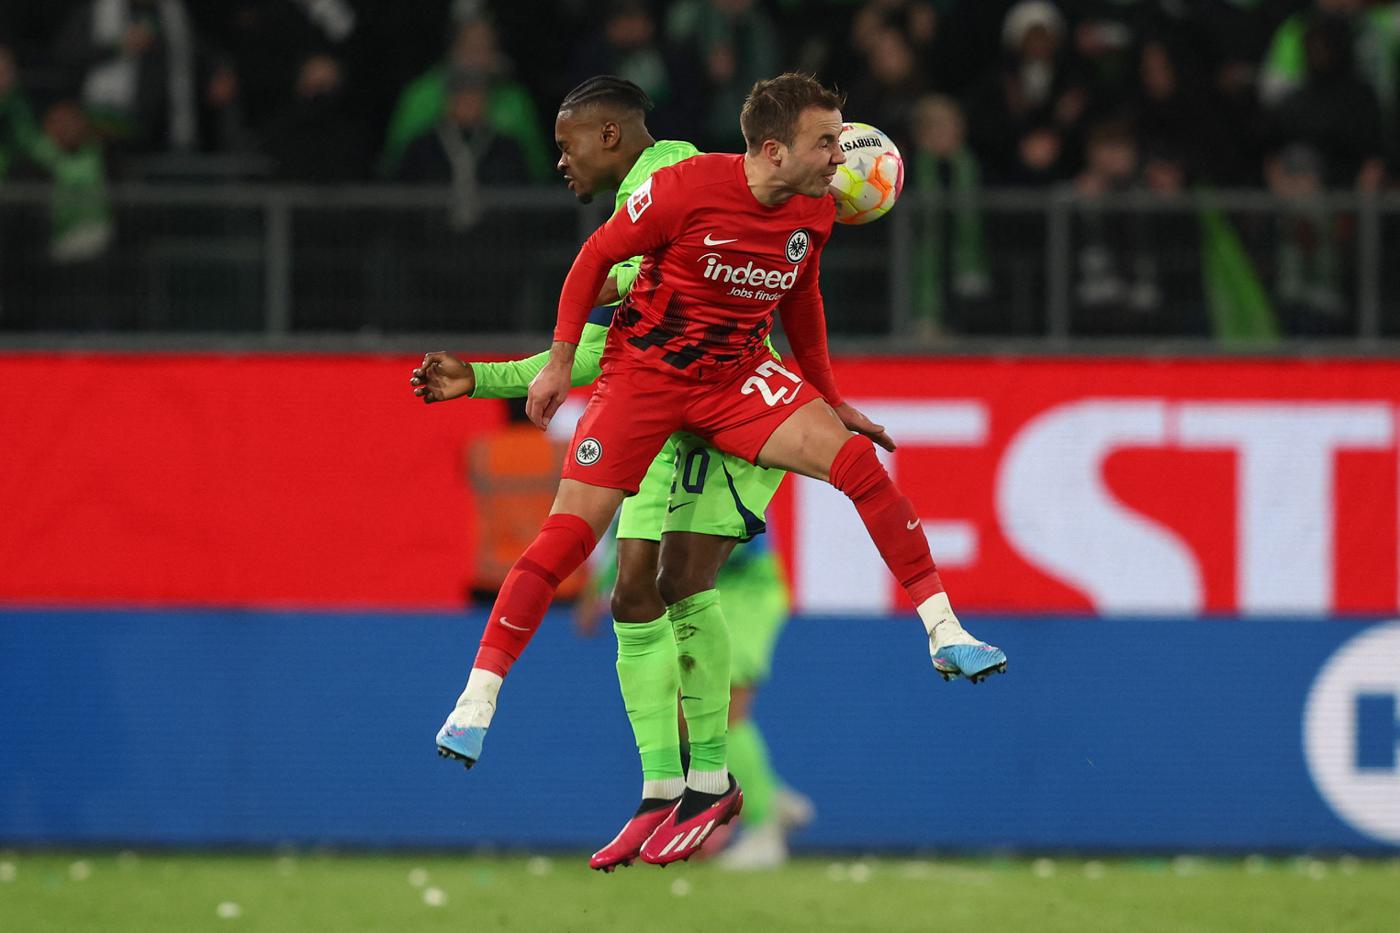 Wolfsburg v Eintracht - 2-2. Mistrzostwo Niemiec, runda 23. Przegląd meczu, statystyki.